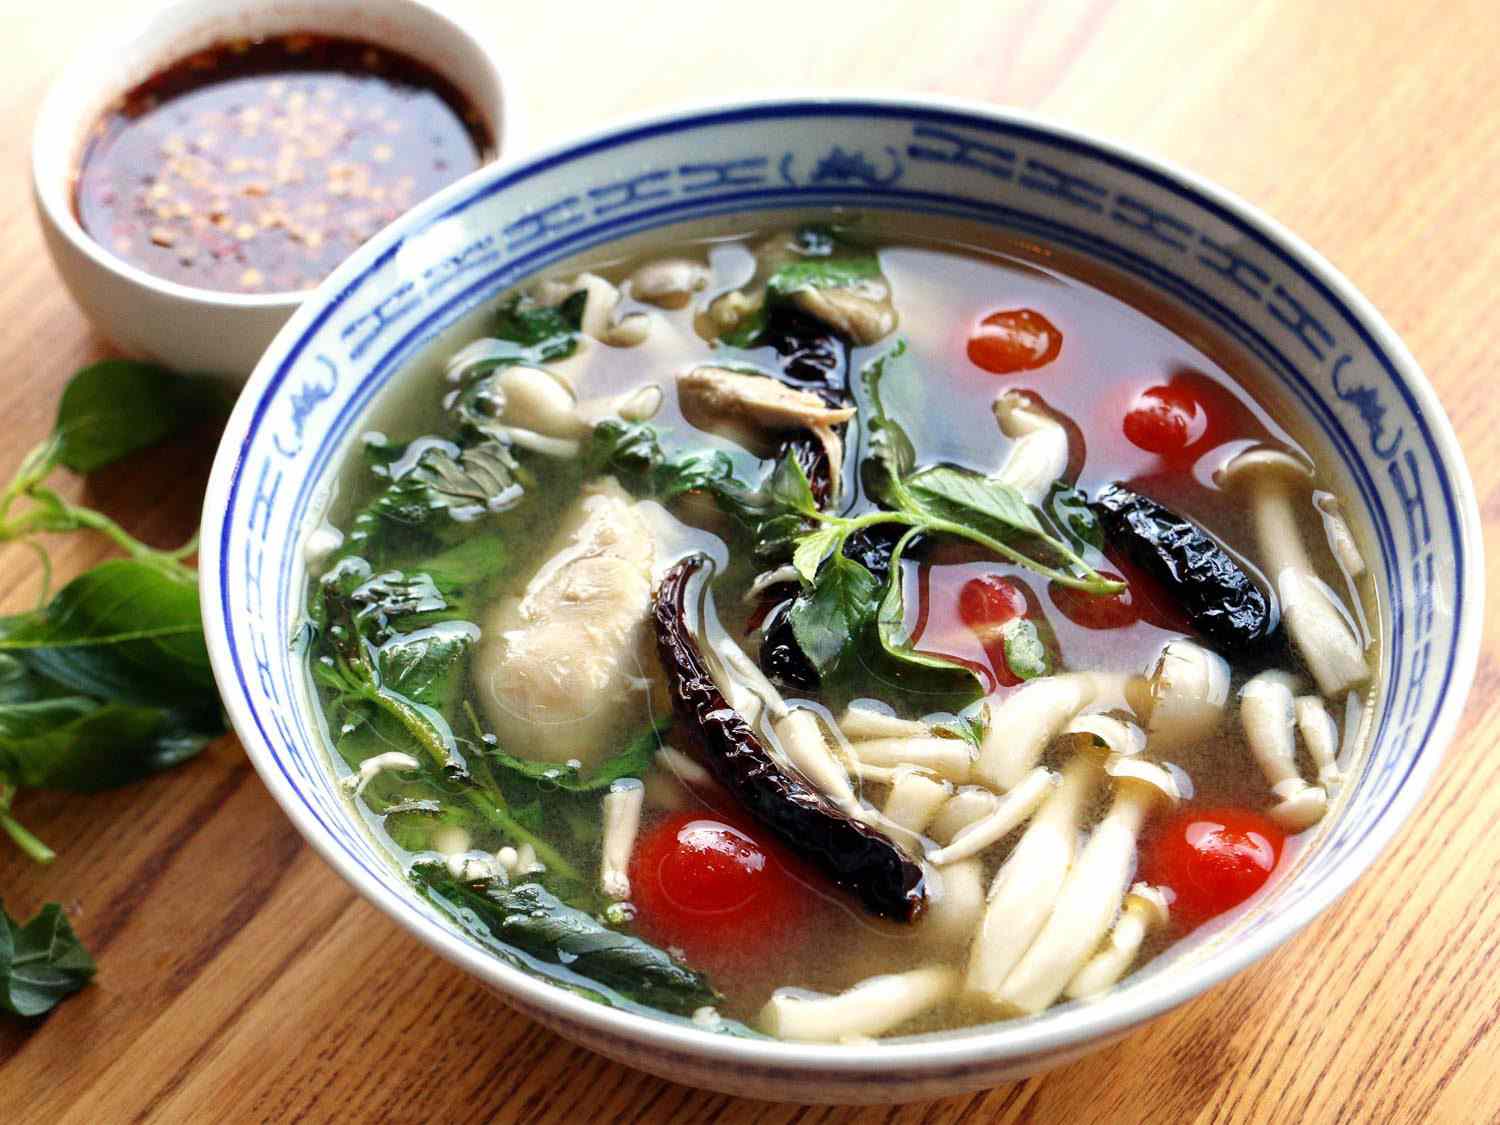 一碗蓝白相间的khao soi(宽米粉，西红柿，蘑菇和蔬菜在鸡汤里)，旁边是一小碗辣椒酱